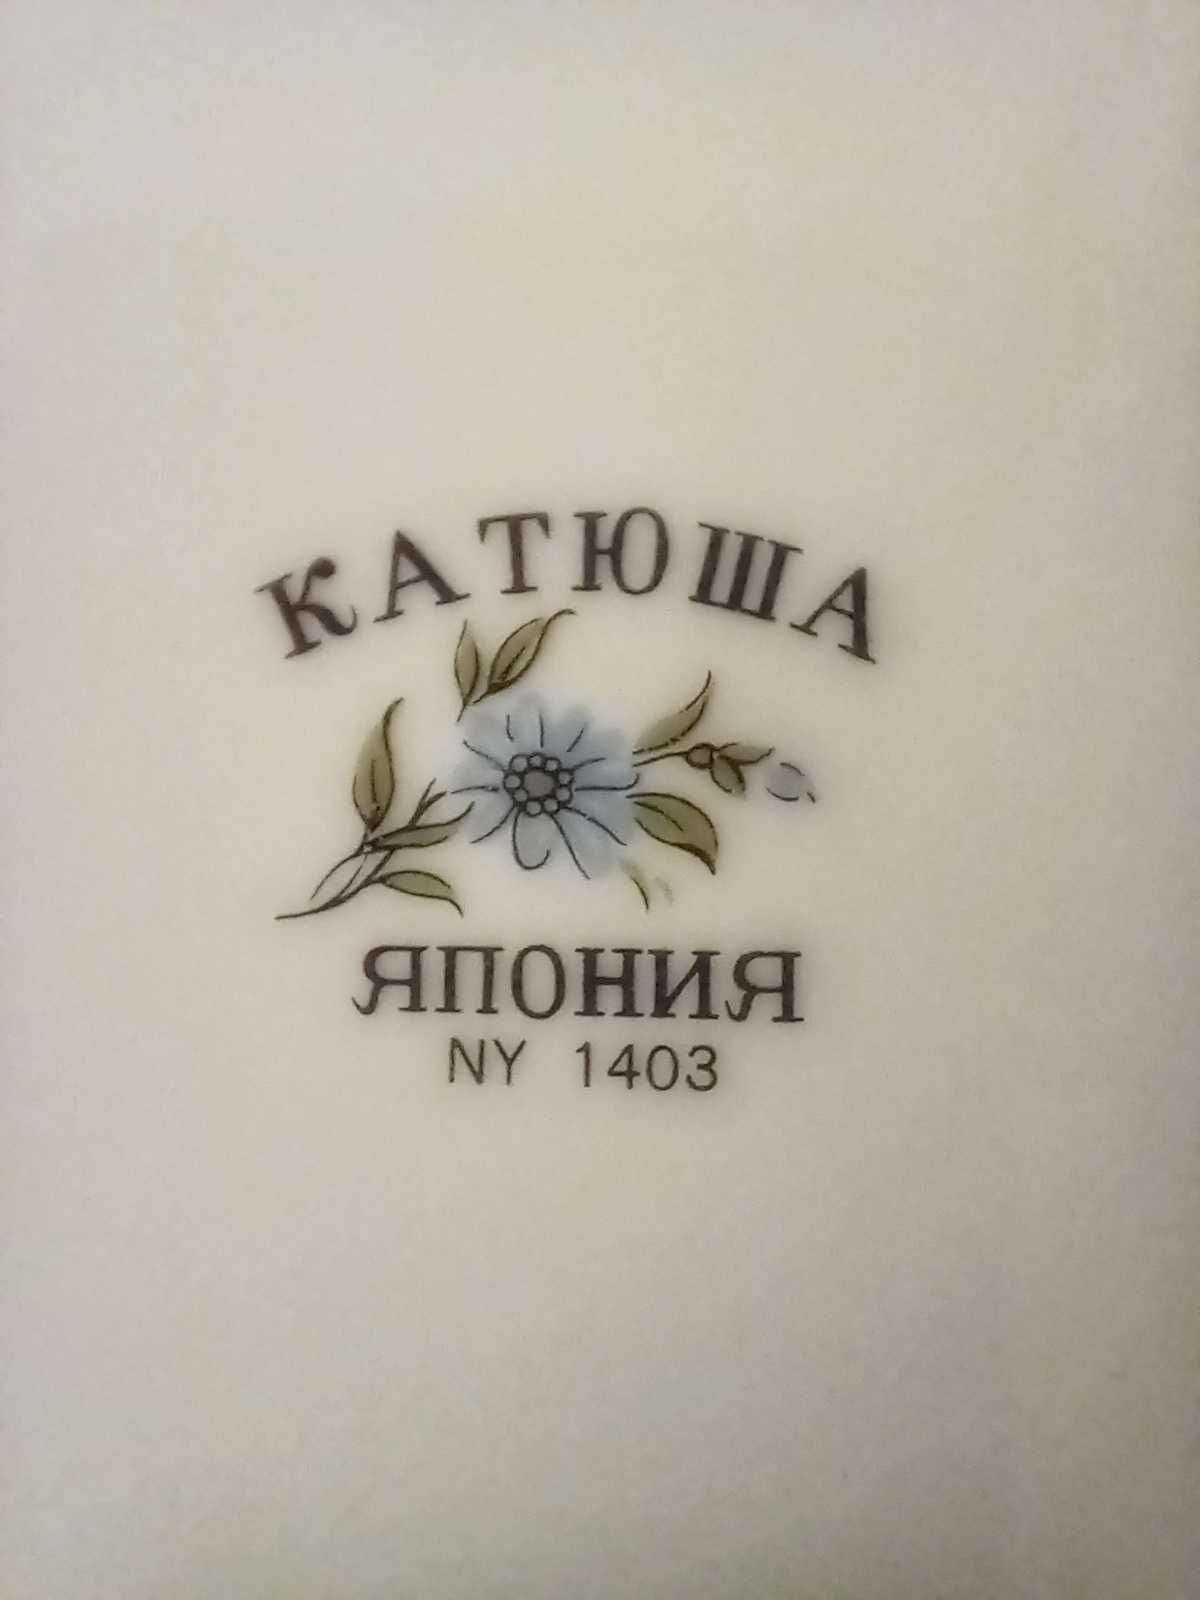 Фарфоровая тарелка Катюша Япония диаметр 21 см, СССР